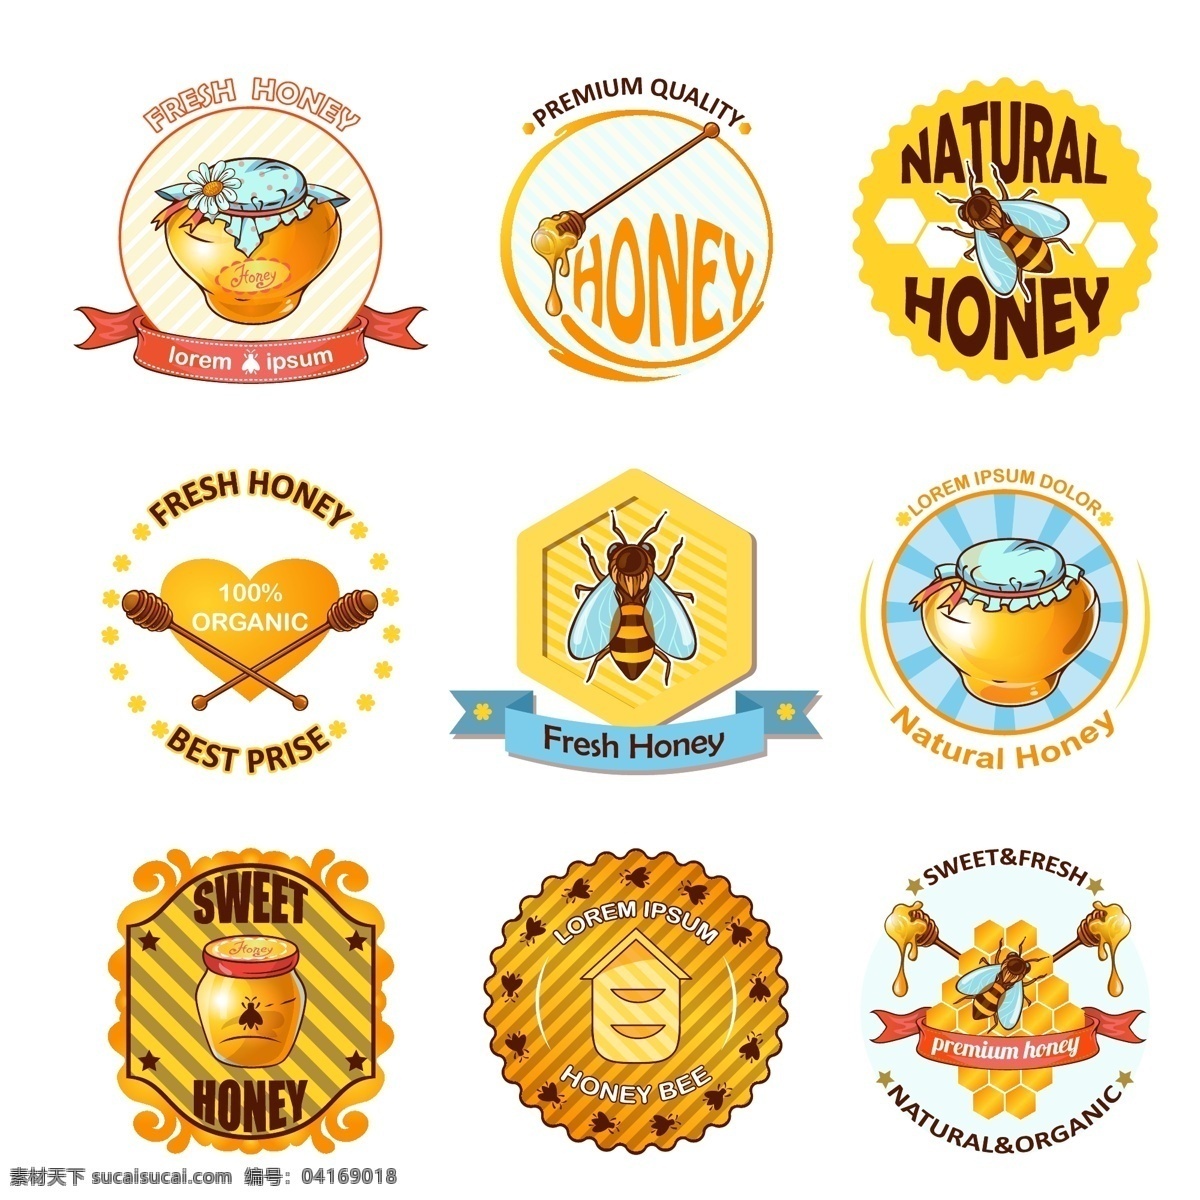 手绘蜂蜜图标 手绘蜜蜂蜂蜜 标志logo 手绘蜂蜜 手绘蜜蜂 采蜜 蜜蜂 蜂蜜包装 蜂蜜logo 蜂蜜标志 蜂蜜标识 蜂蜜贴纸 标志 蜂蜜 蜂蜜蜜蜂 蜜蜂蜂蜜 蜜蜂标志 卡通设计